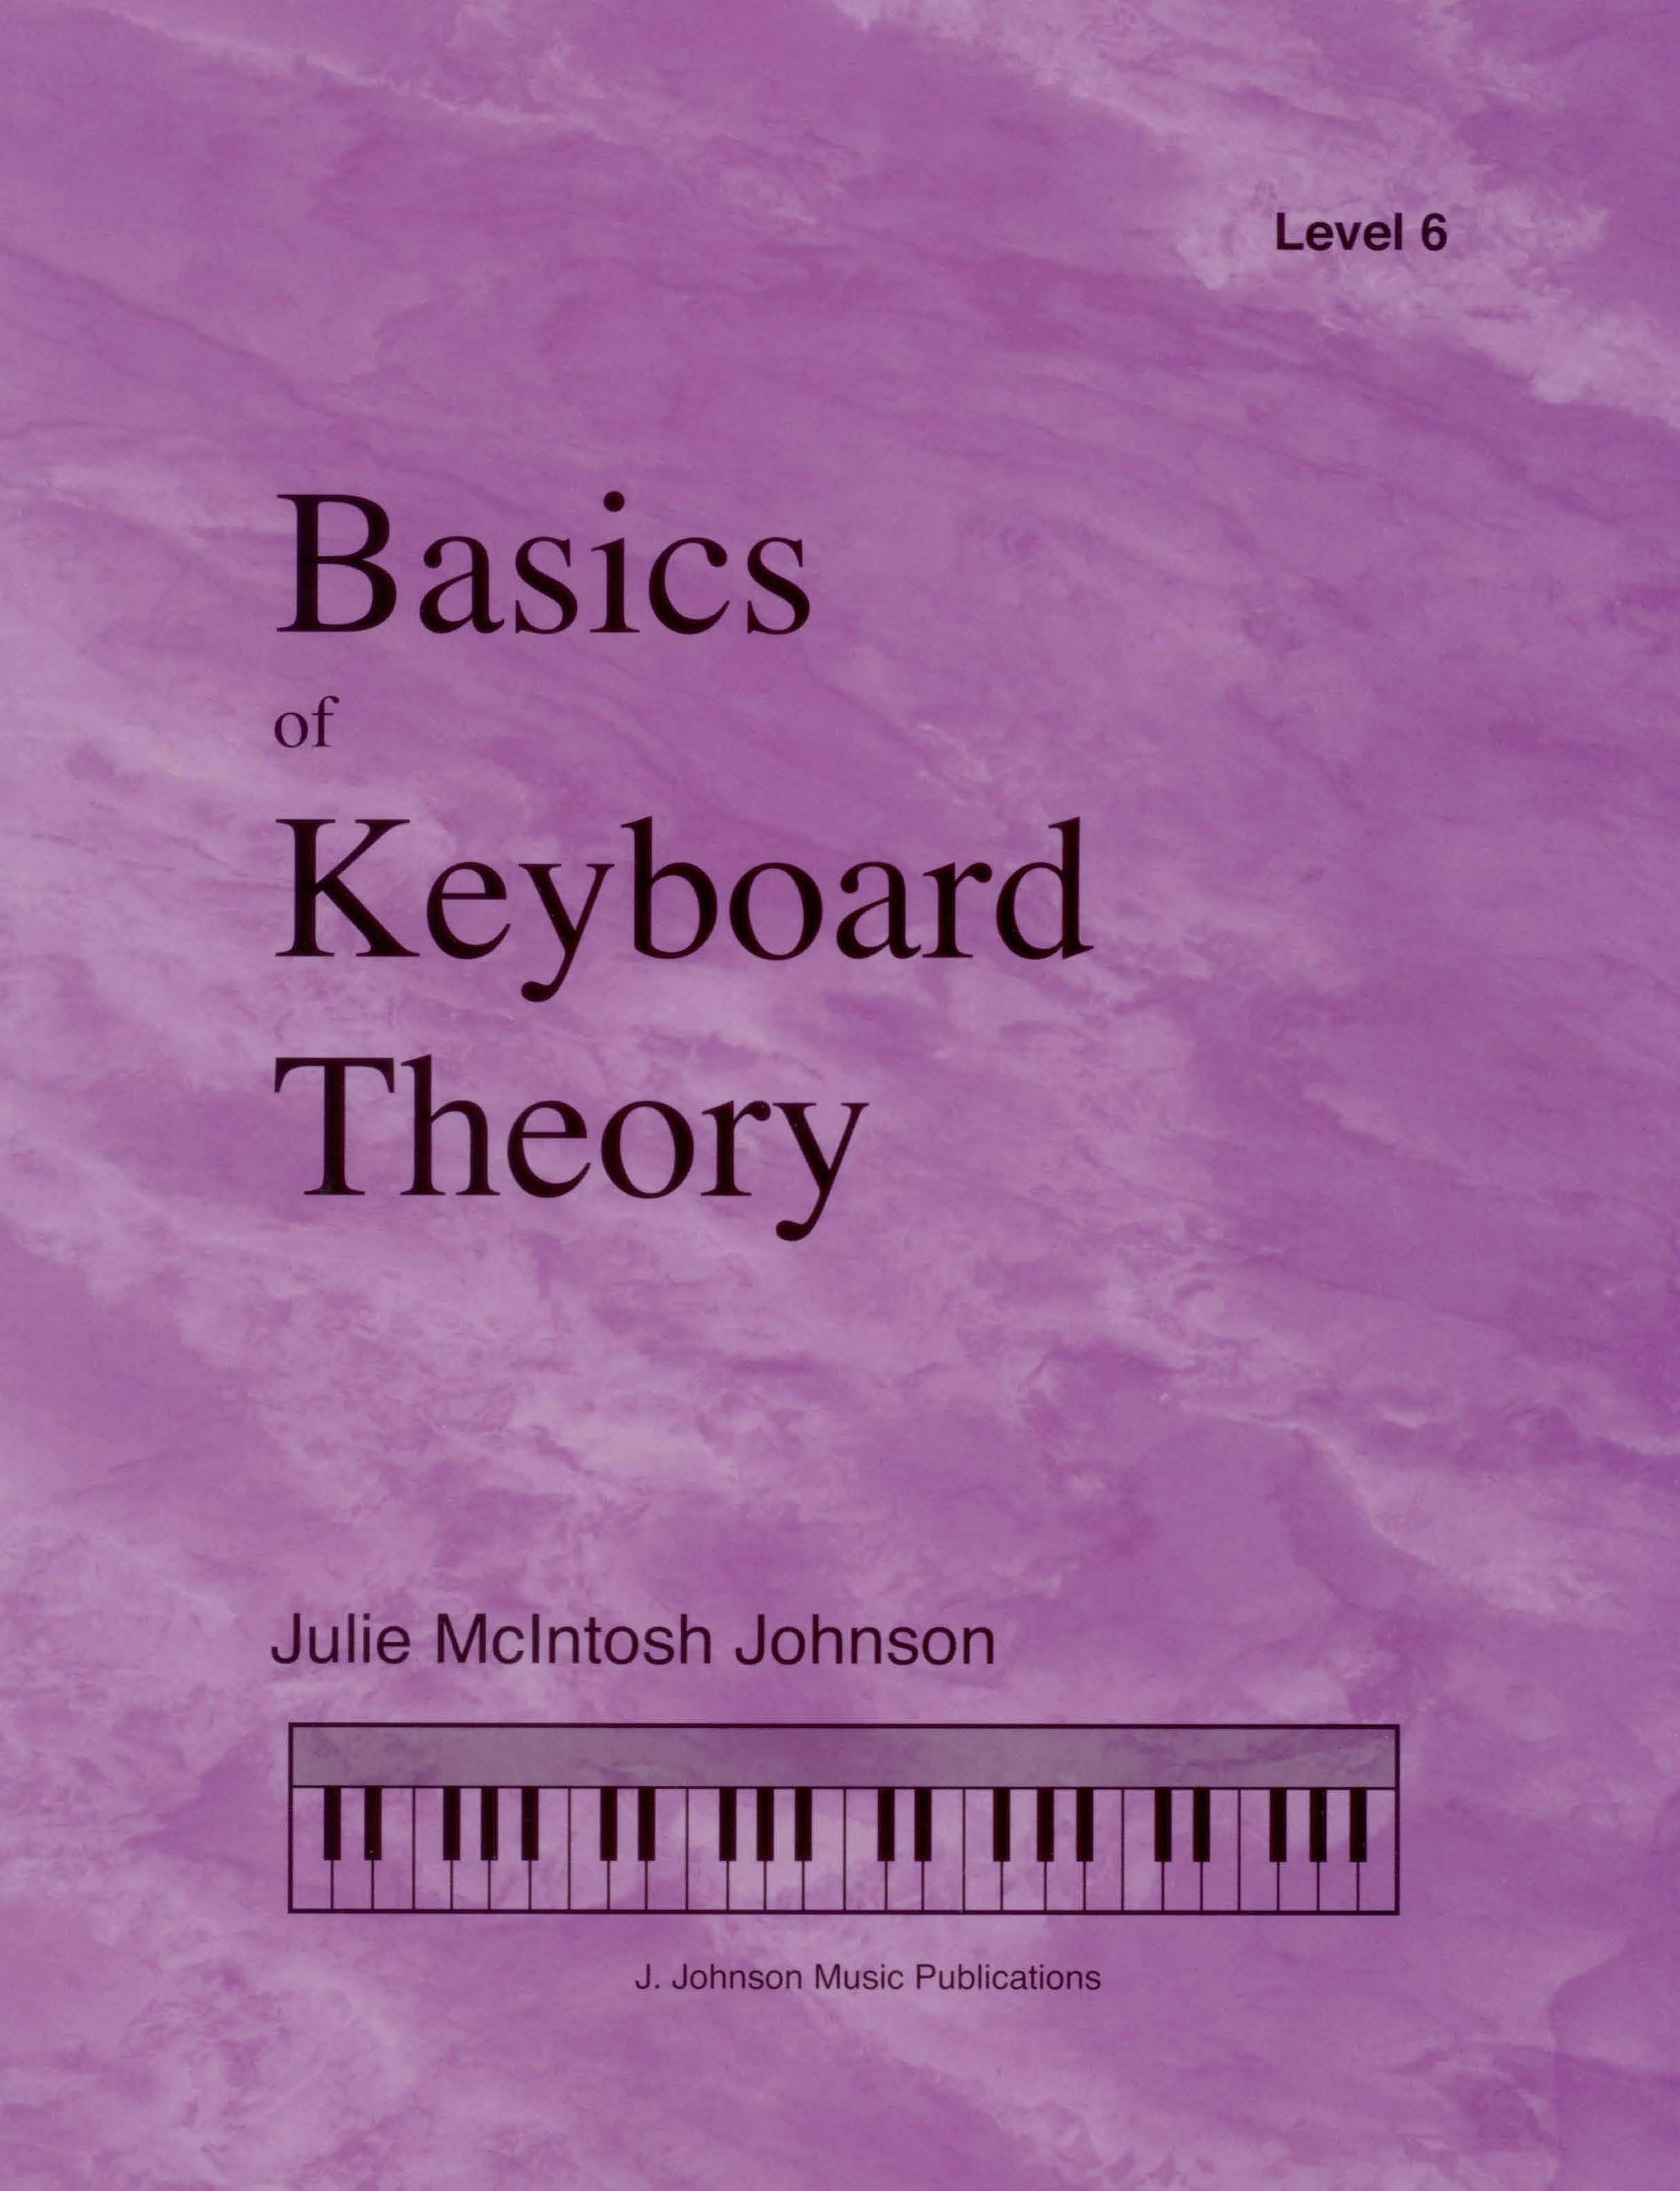 Basics of Keyboard Theory Level 6